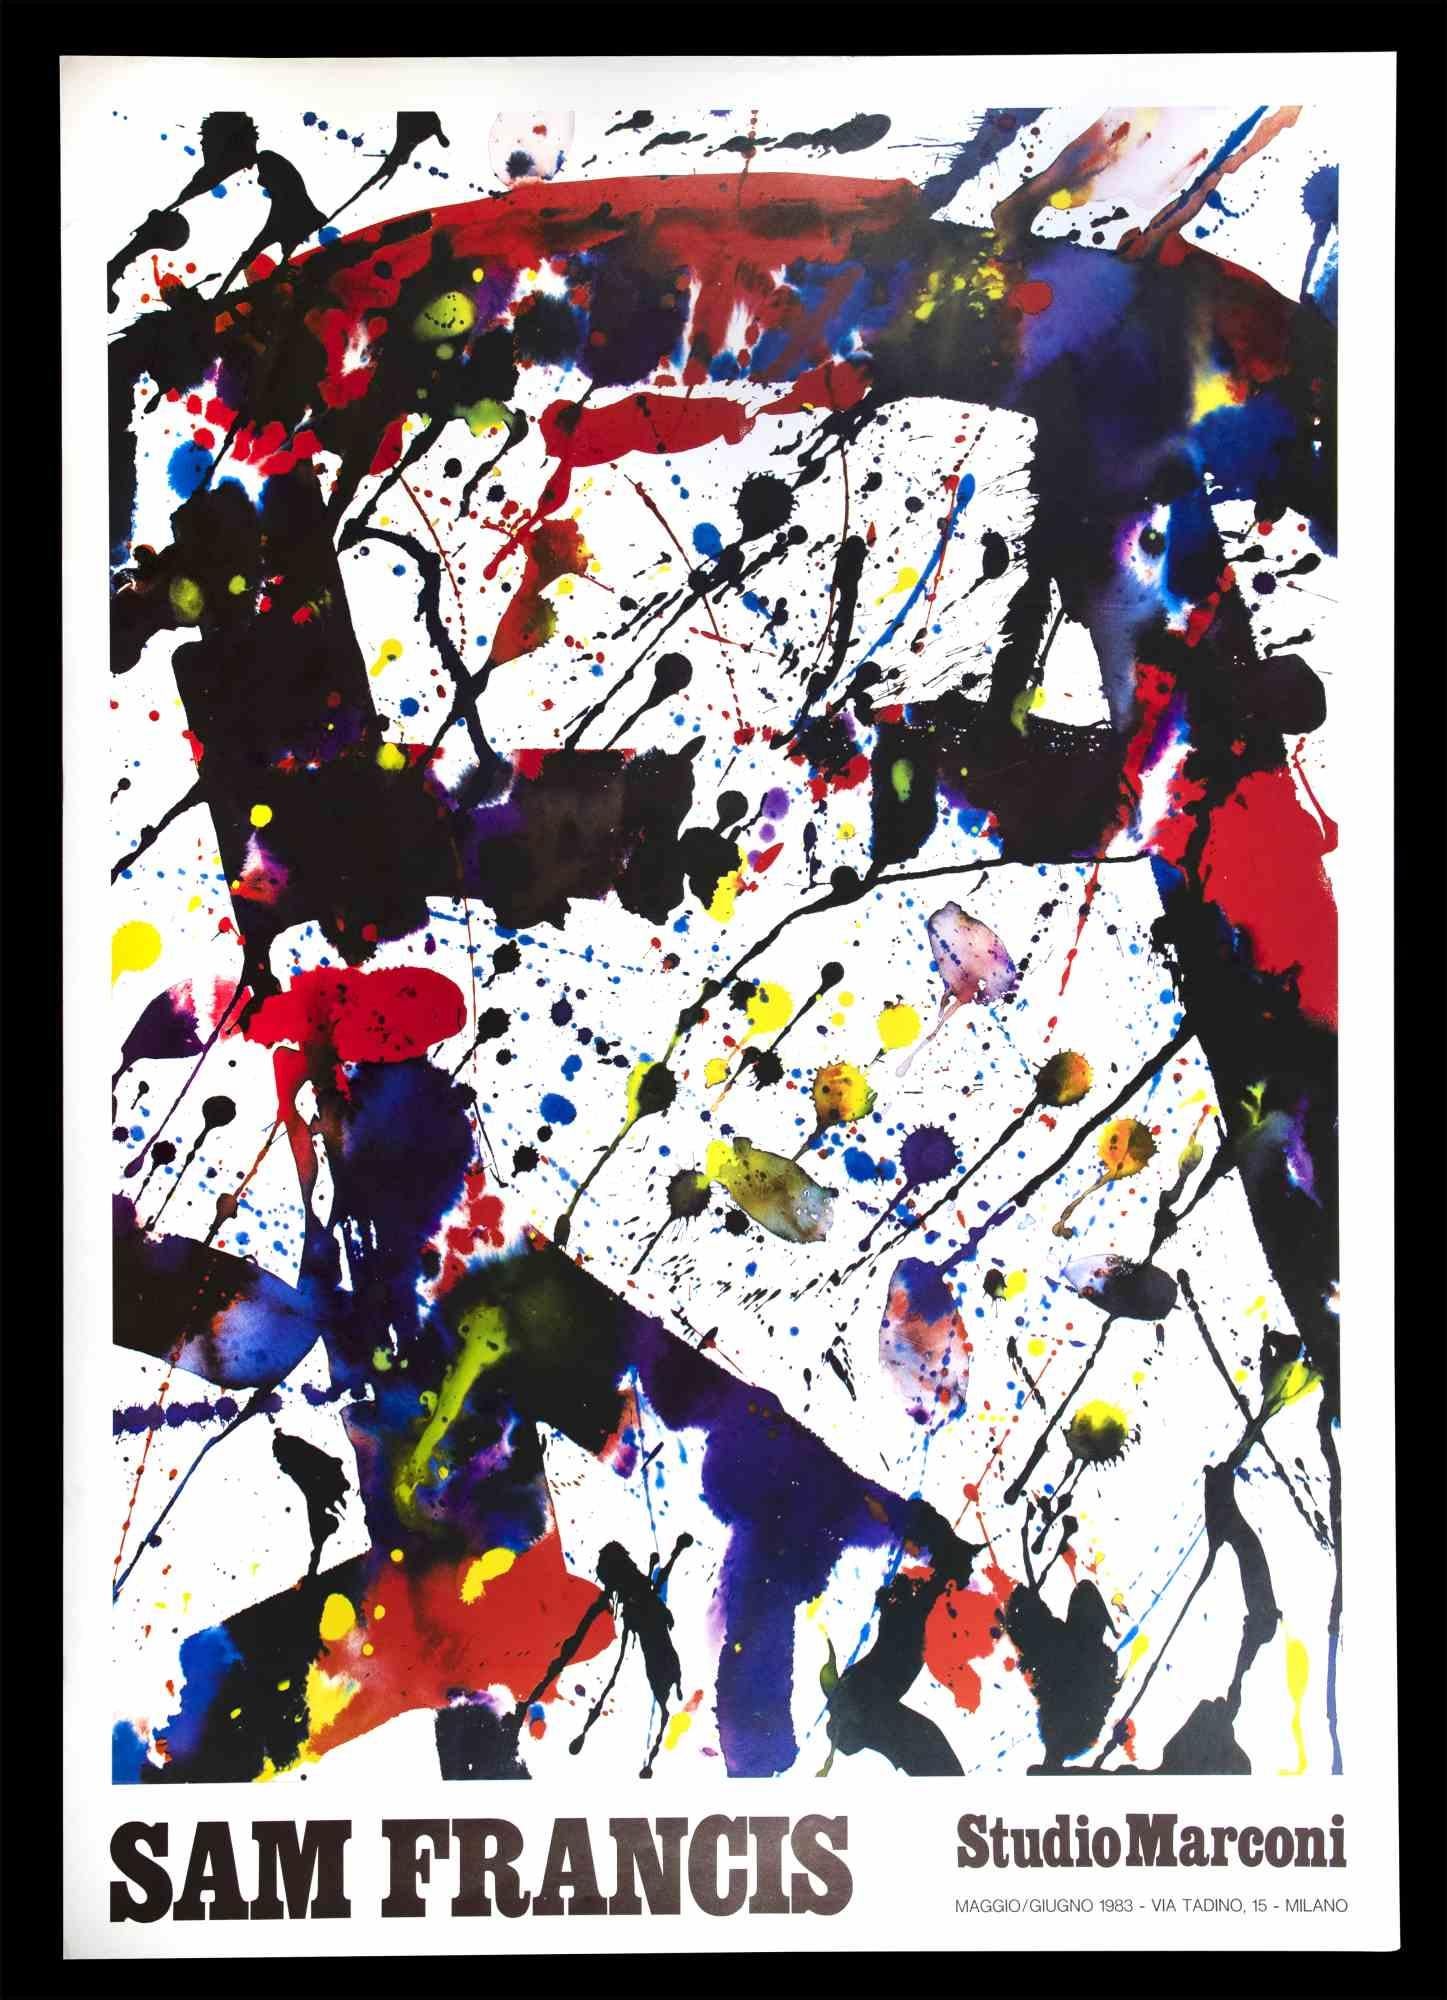 Sam Francis - Exhibition Poster ist ein gemischtfarbiger Offsetdruck aus dem Jahr 1983.

Dieser Druck entstand anlässlich der dem Künstler gewidmeten Ausstellung, die 1983 im Studio Marconi in Mailand stattfand.

Guter Zustand mit Ausnahme einiger